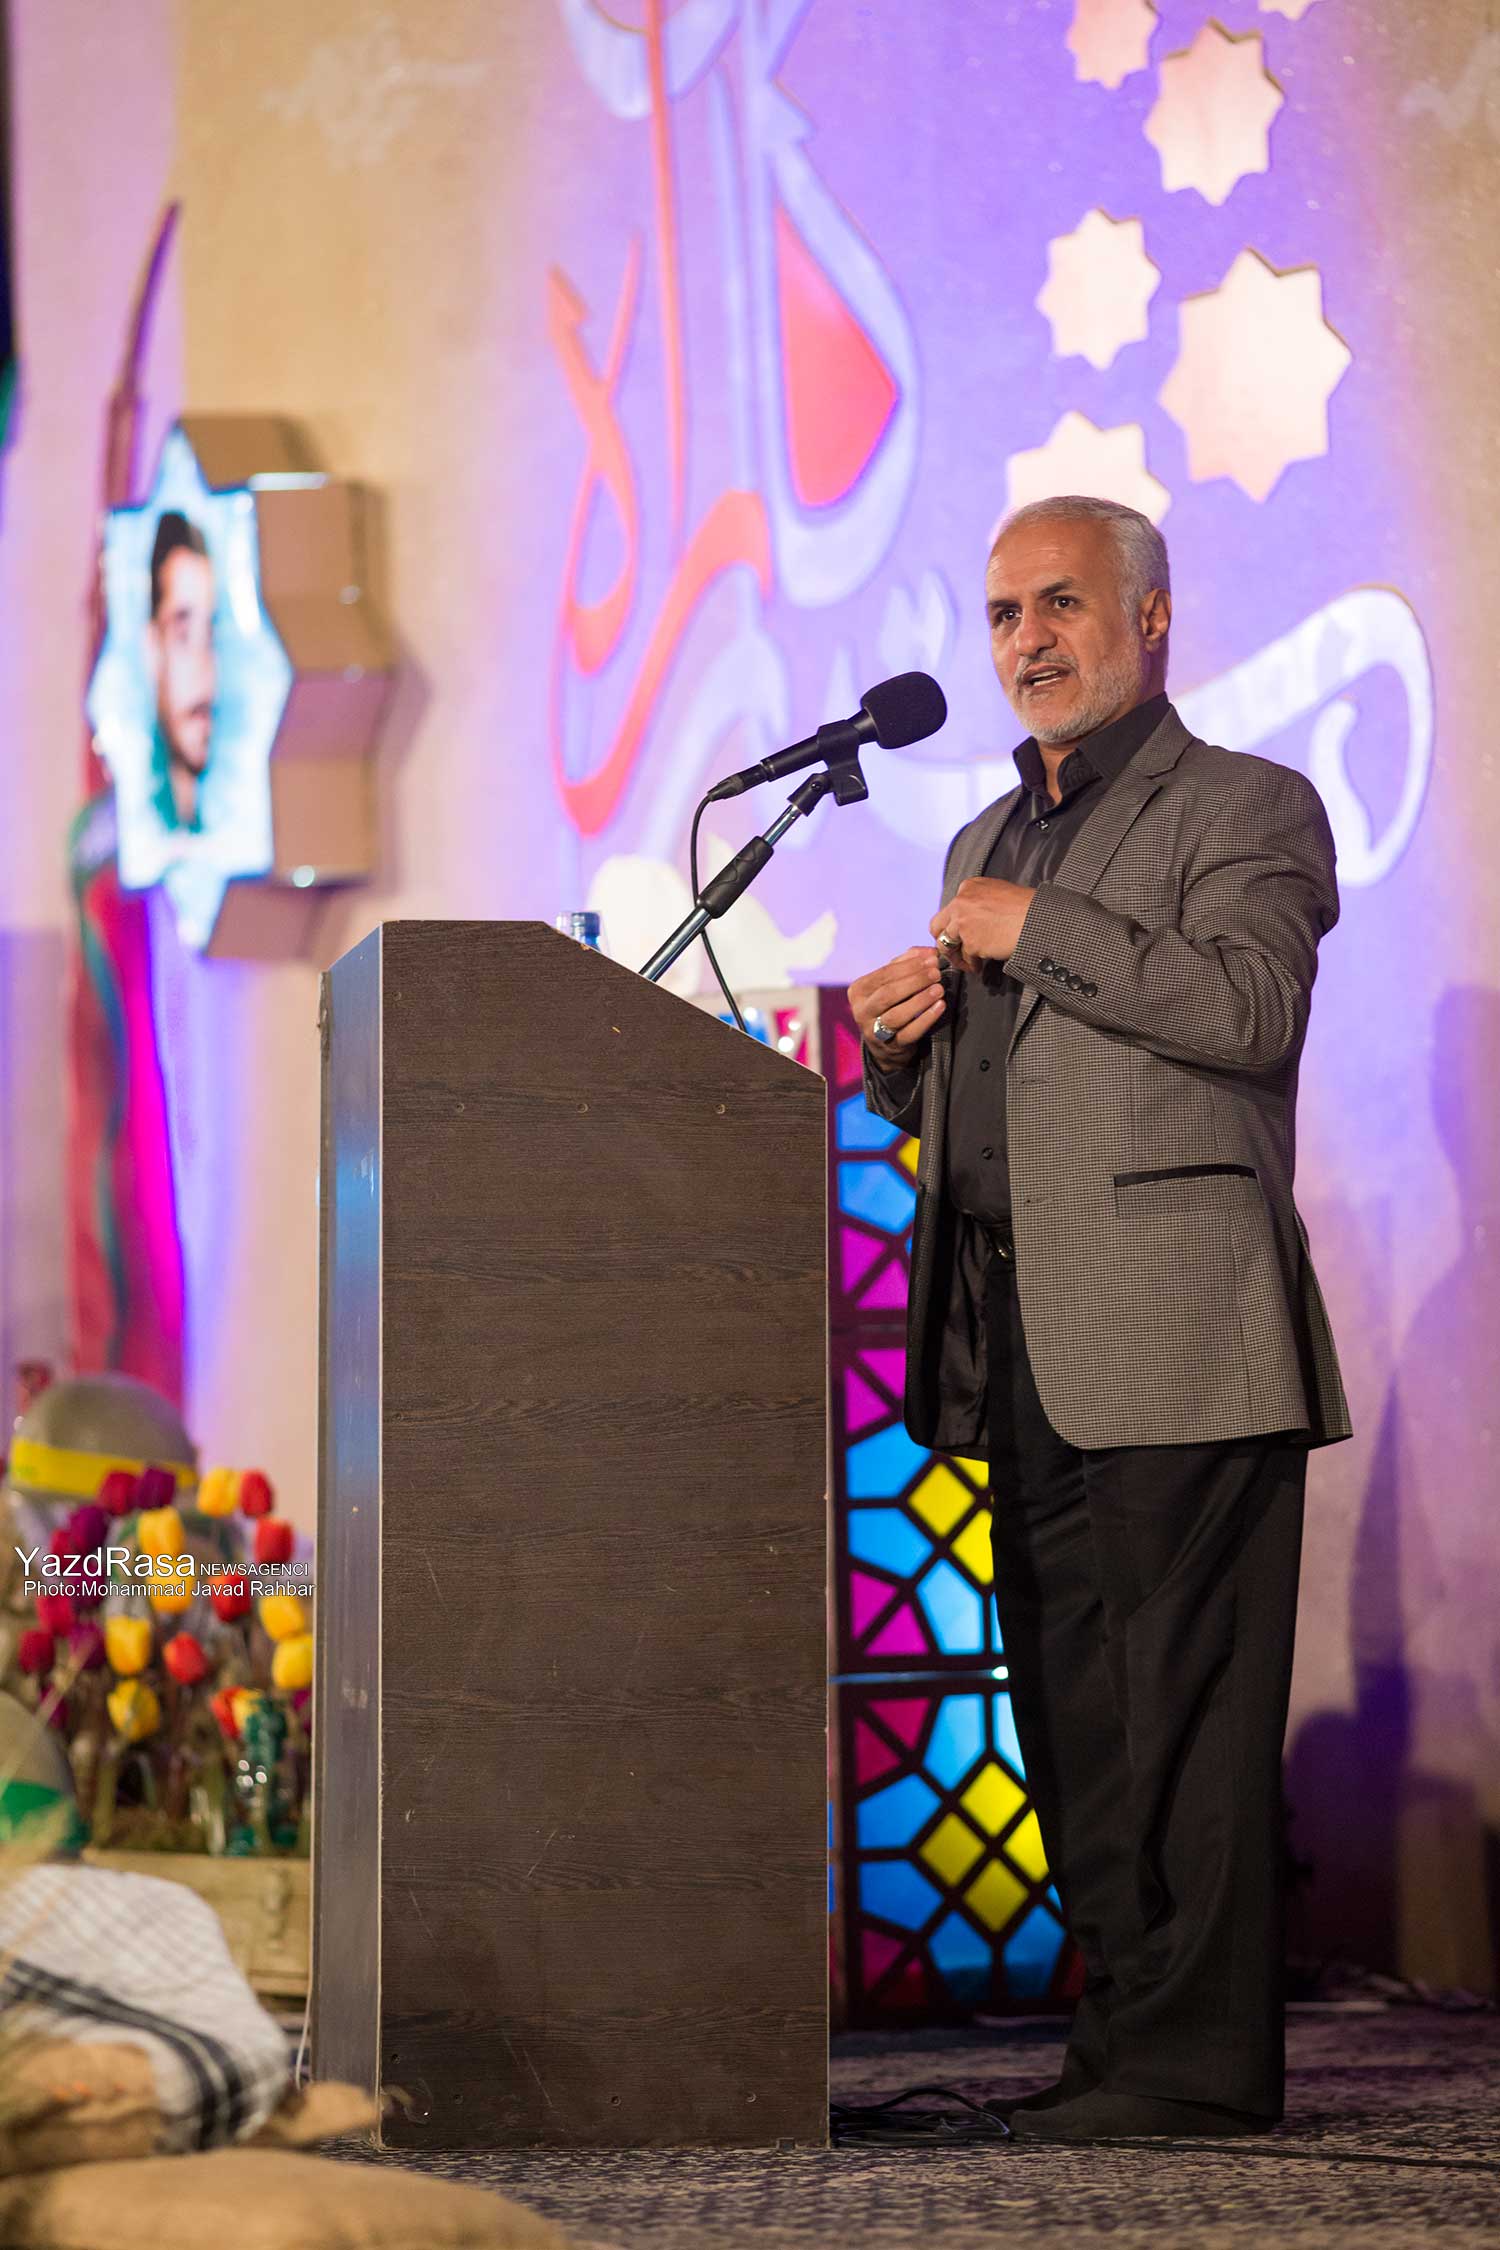 سخنرانی استاد حسن عباسی در یزد - یادواره ستارگان راه (یادواره شهید صدوقی و شهدای شهرستان یزد)